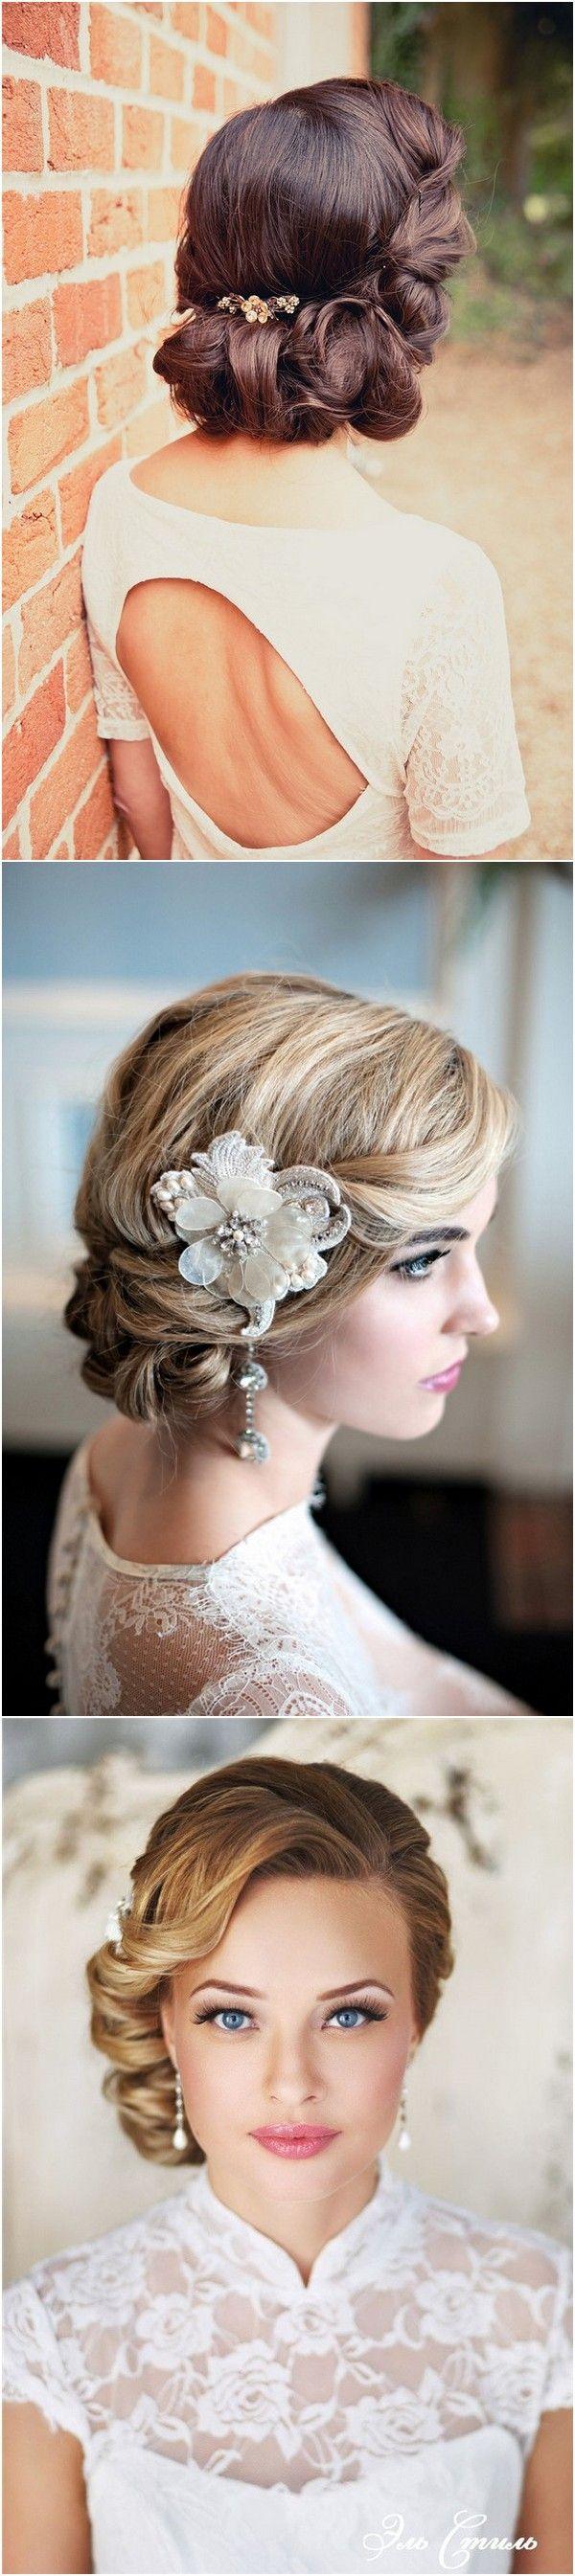 زفاف - Top 20 Vintage Wedding Hairstyles For Brides - Page 2 Of 3